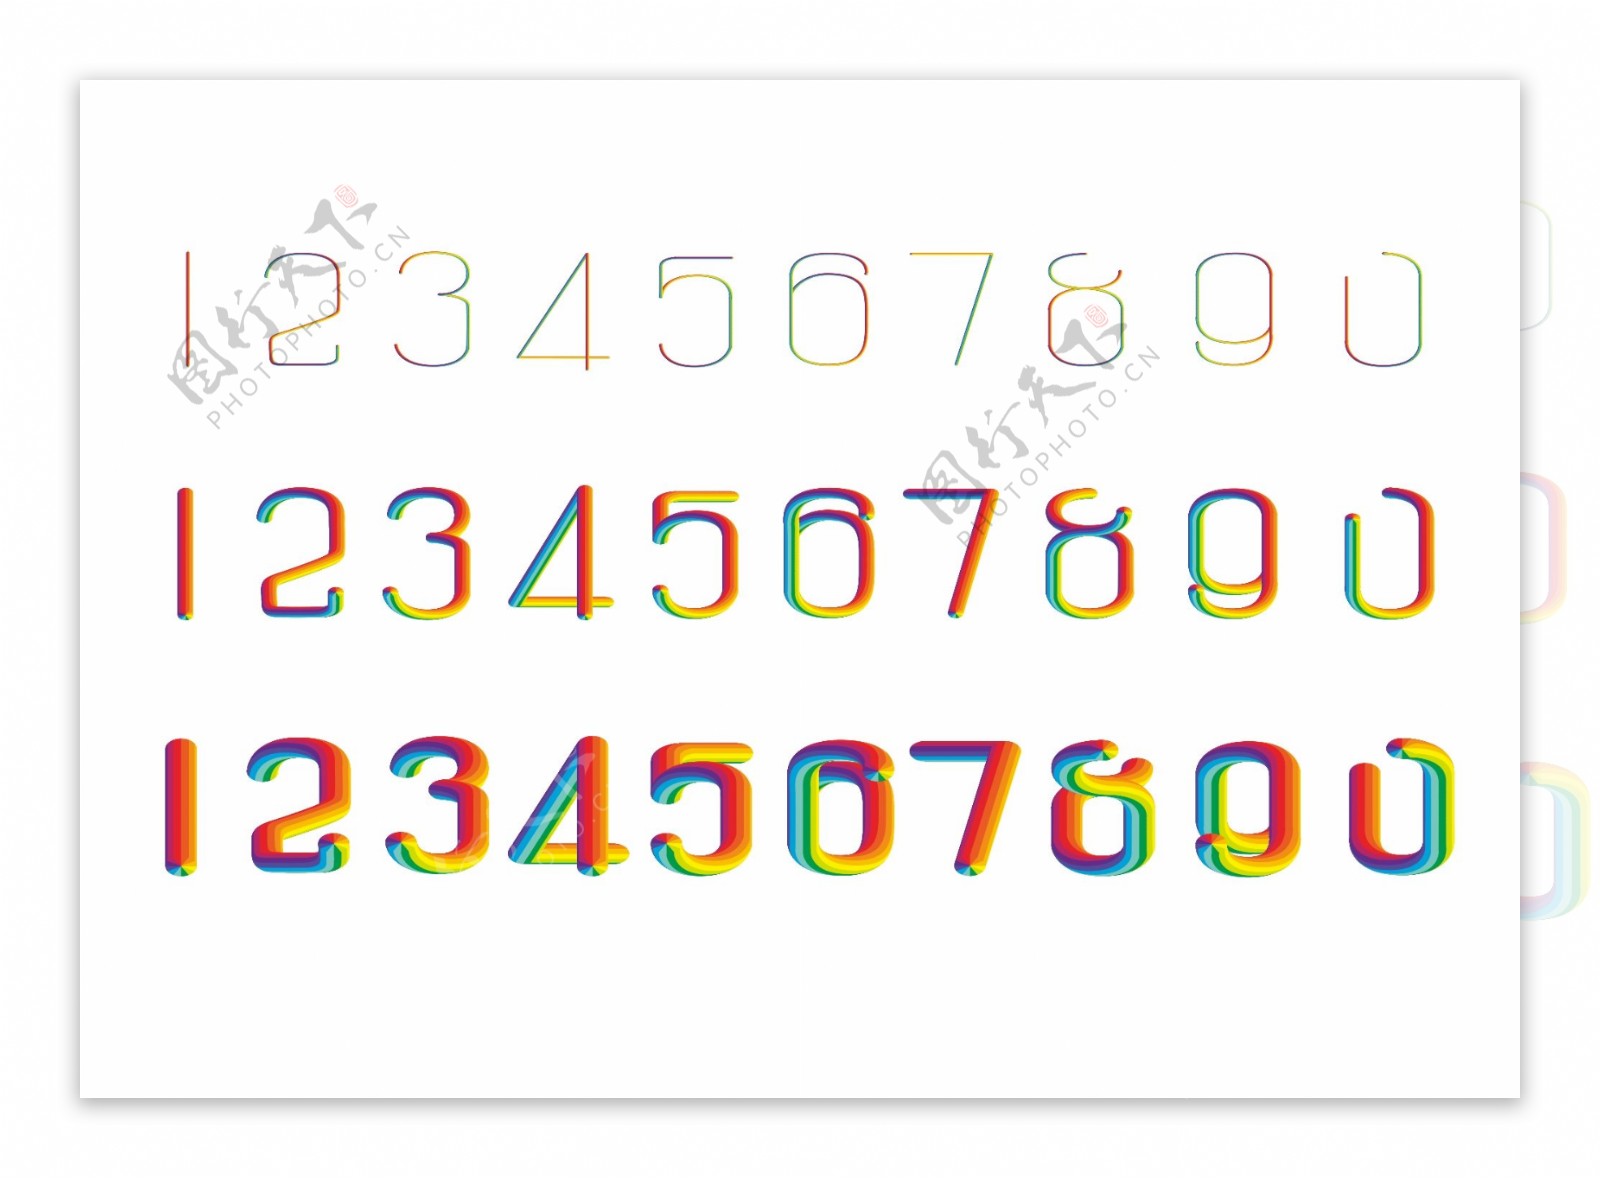 彩虹数字设计模板